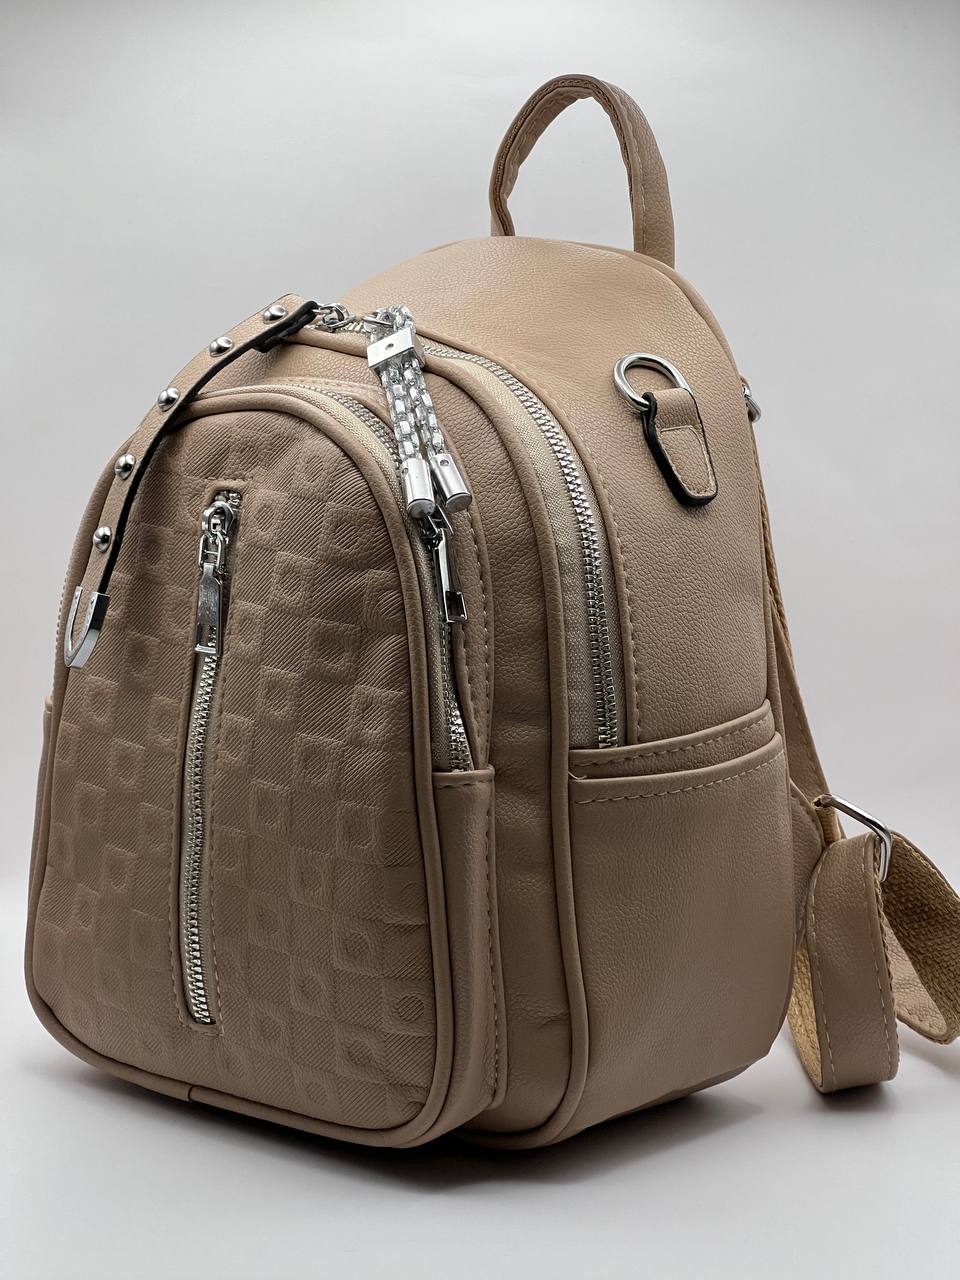 Сумка-рюкзак женская SunGold Р-92010 бежевая, 27х22х12 см